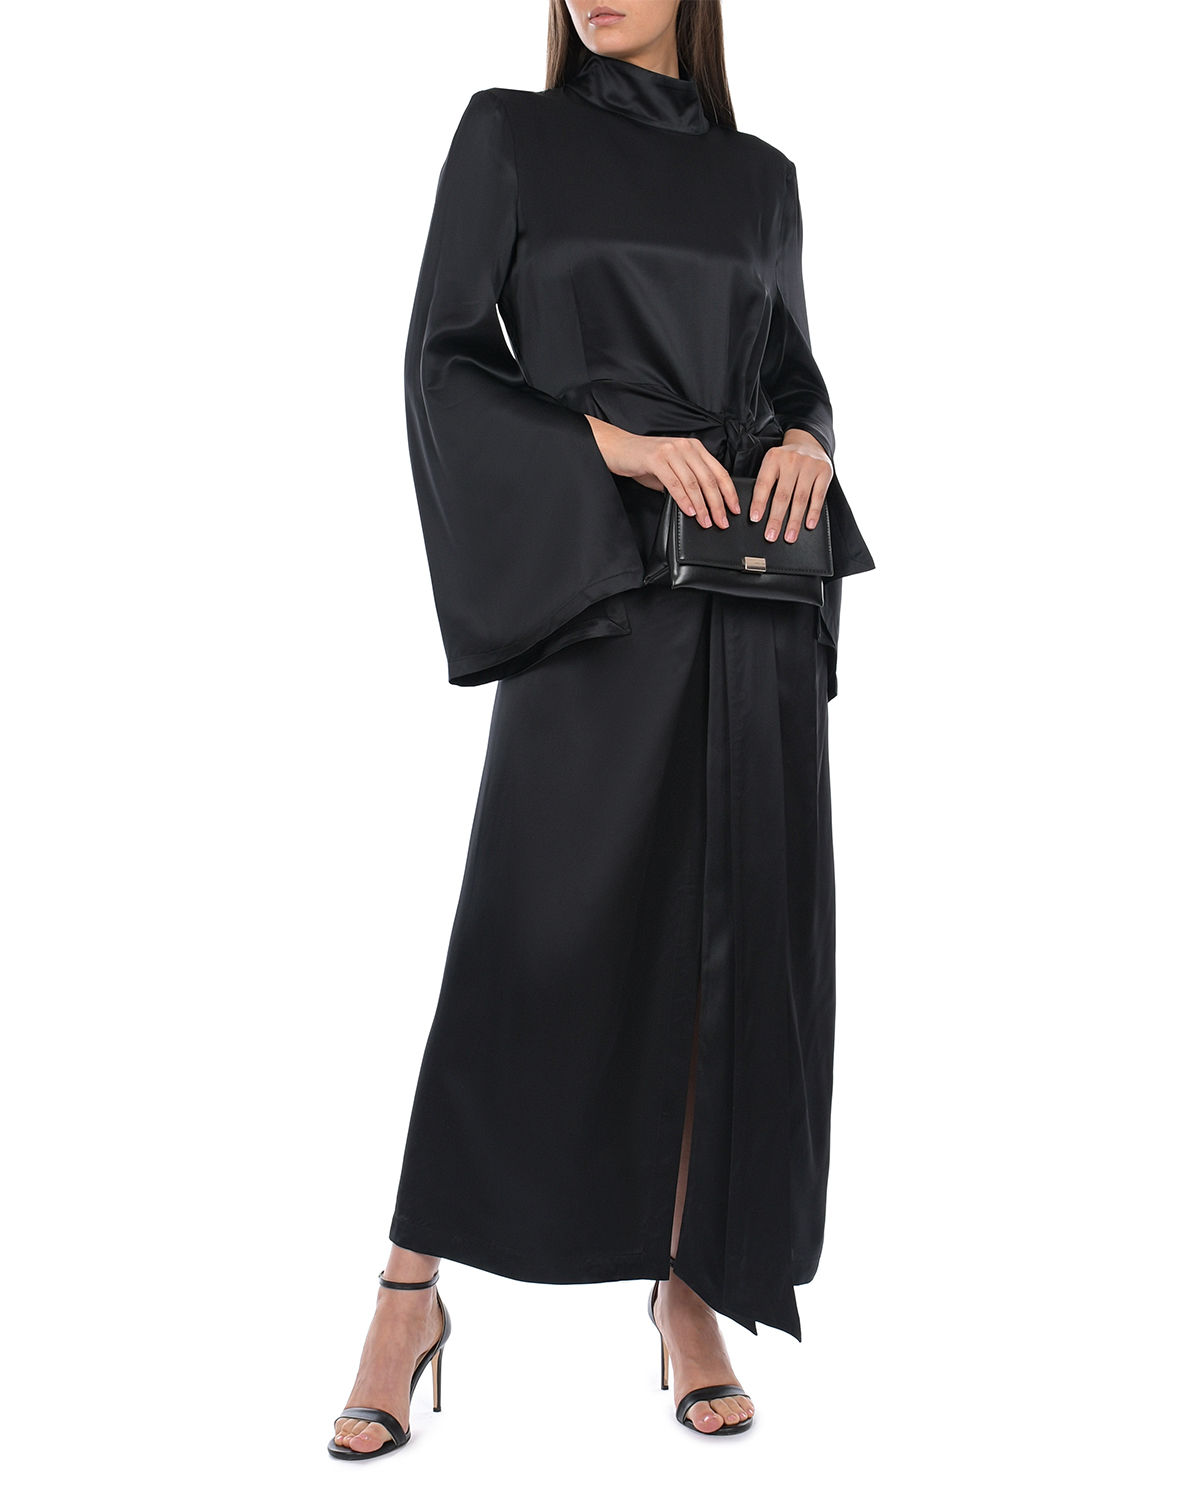 Черное платье с длинными расклешенными рукавами ROHE, размер 44, цвет черный - фото 2